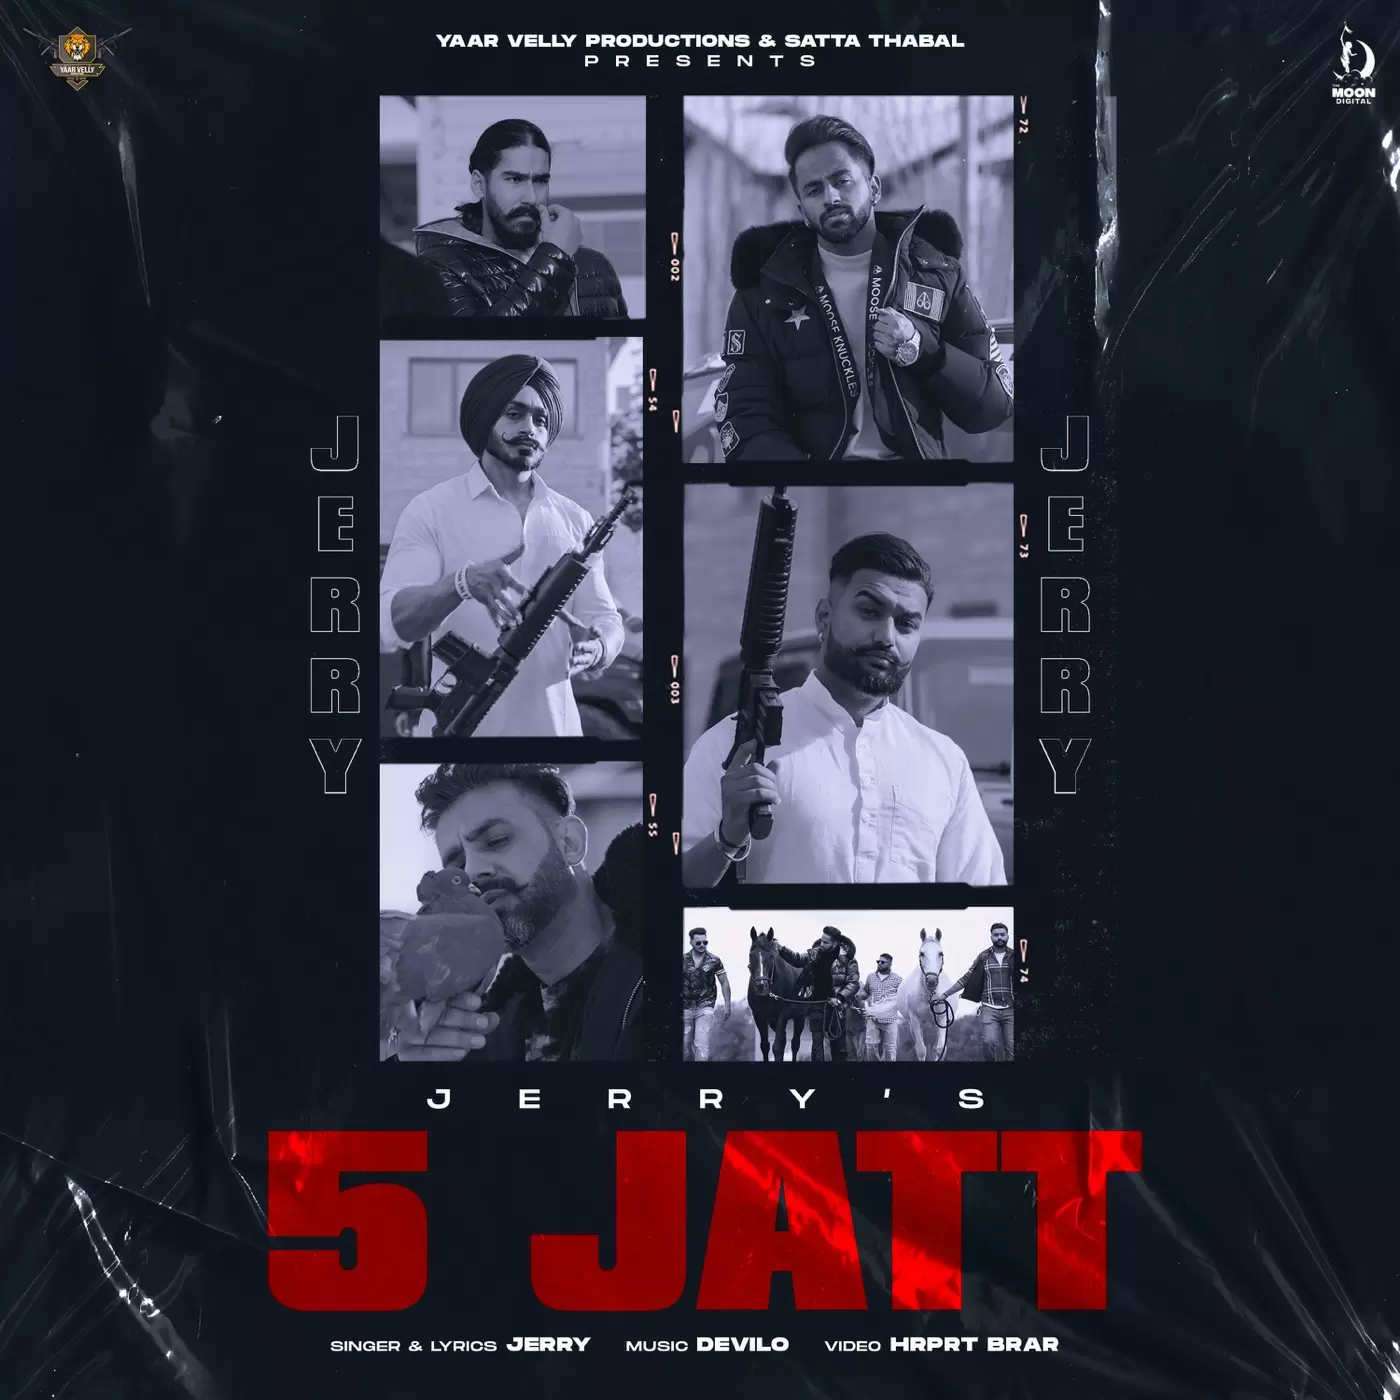 5 Jatt